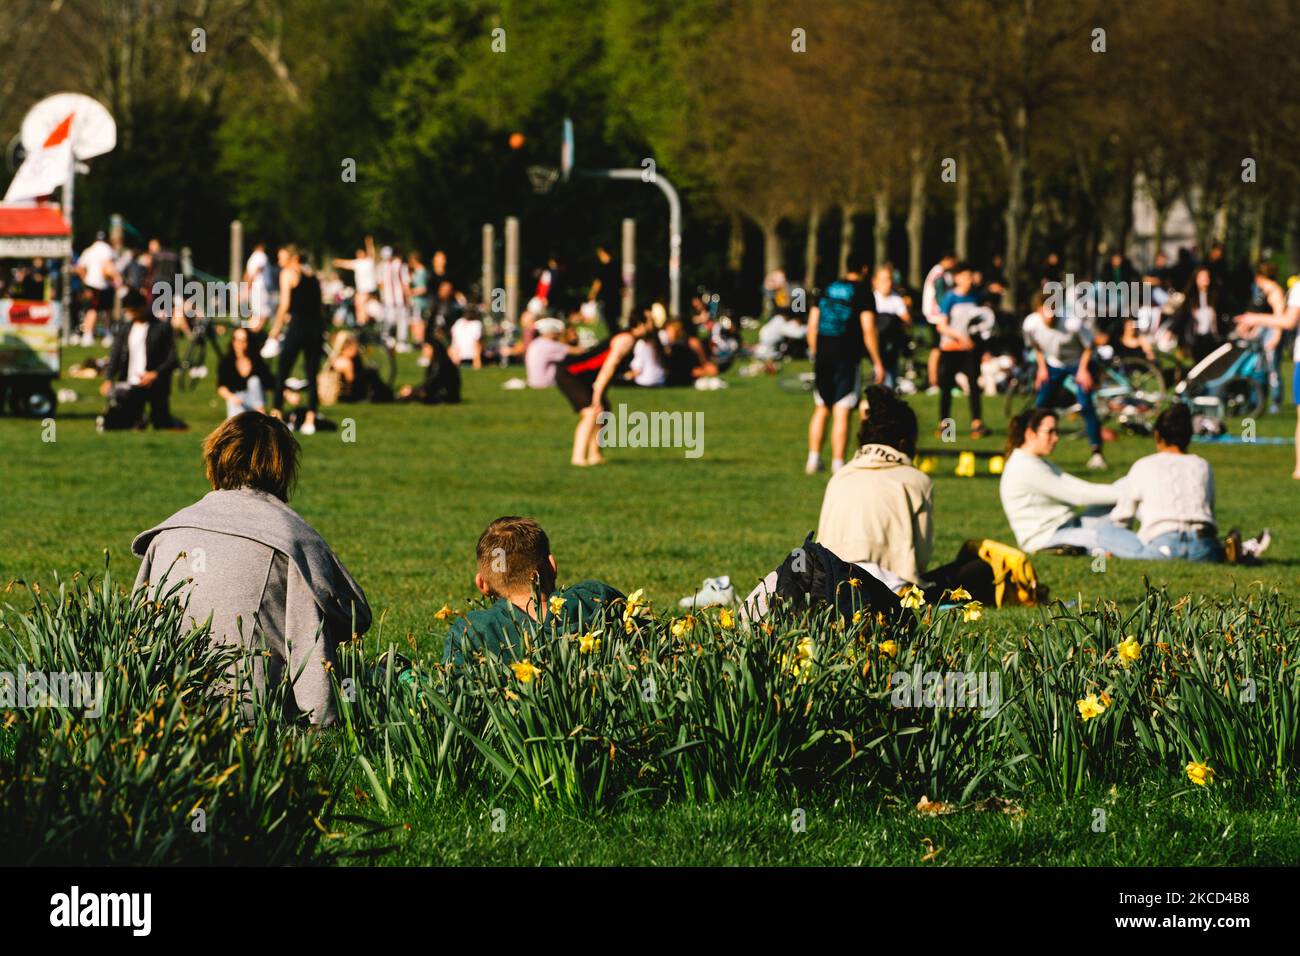 Die Menschen entspannen sich im Innerer Grünguertel Park, während das frühlingshafte Wetter in Köln am 20. April 2021 19 Grad Celsius erreicht (Foto: Ying Tang/NurPhoto) Stockfoto